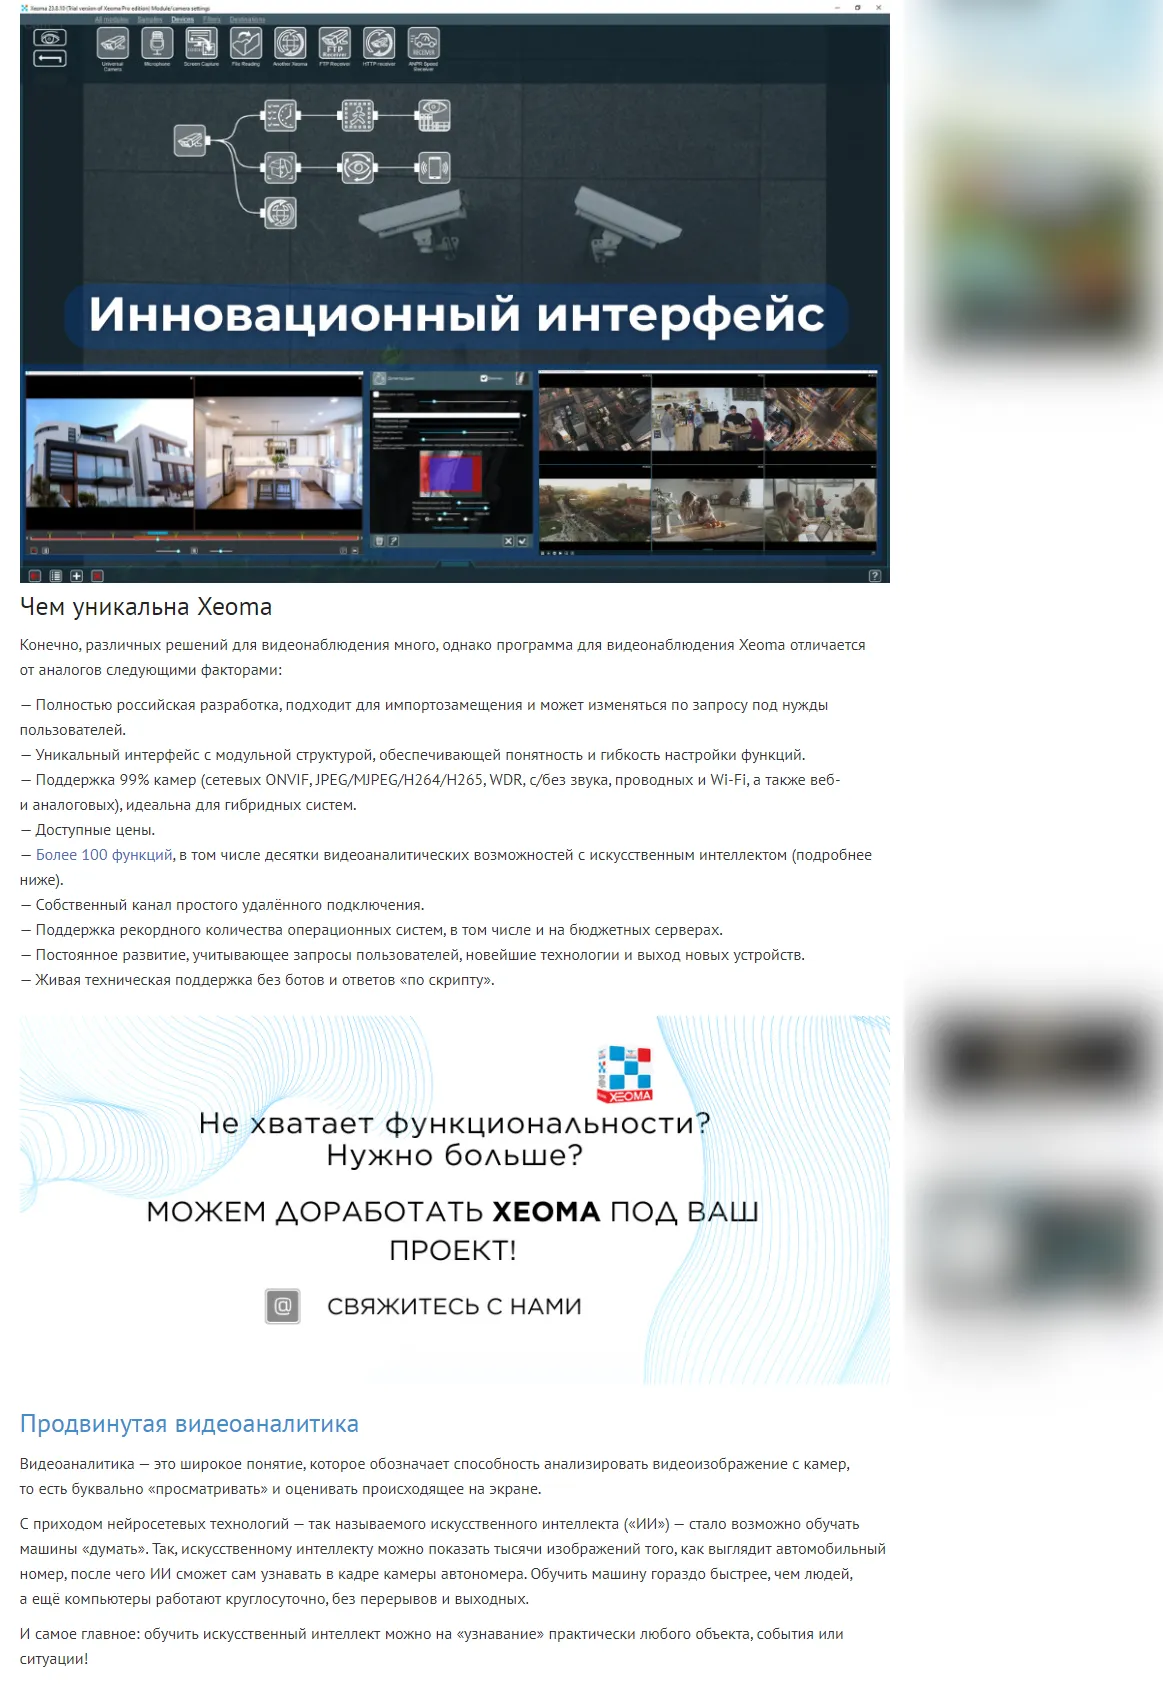 Статья о программе для видеонаблюдения Xeoma в NewKaliningrad. Интерфейс